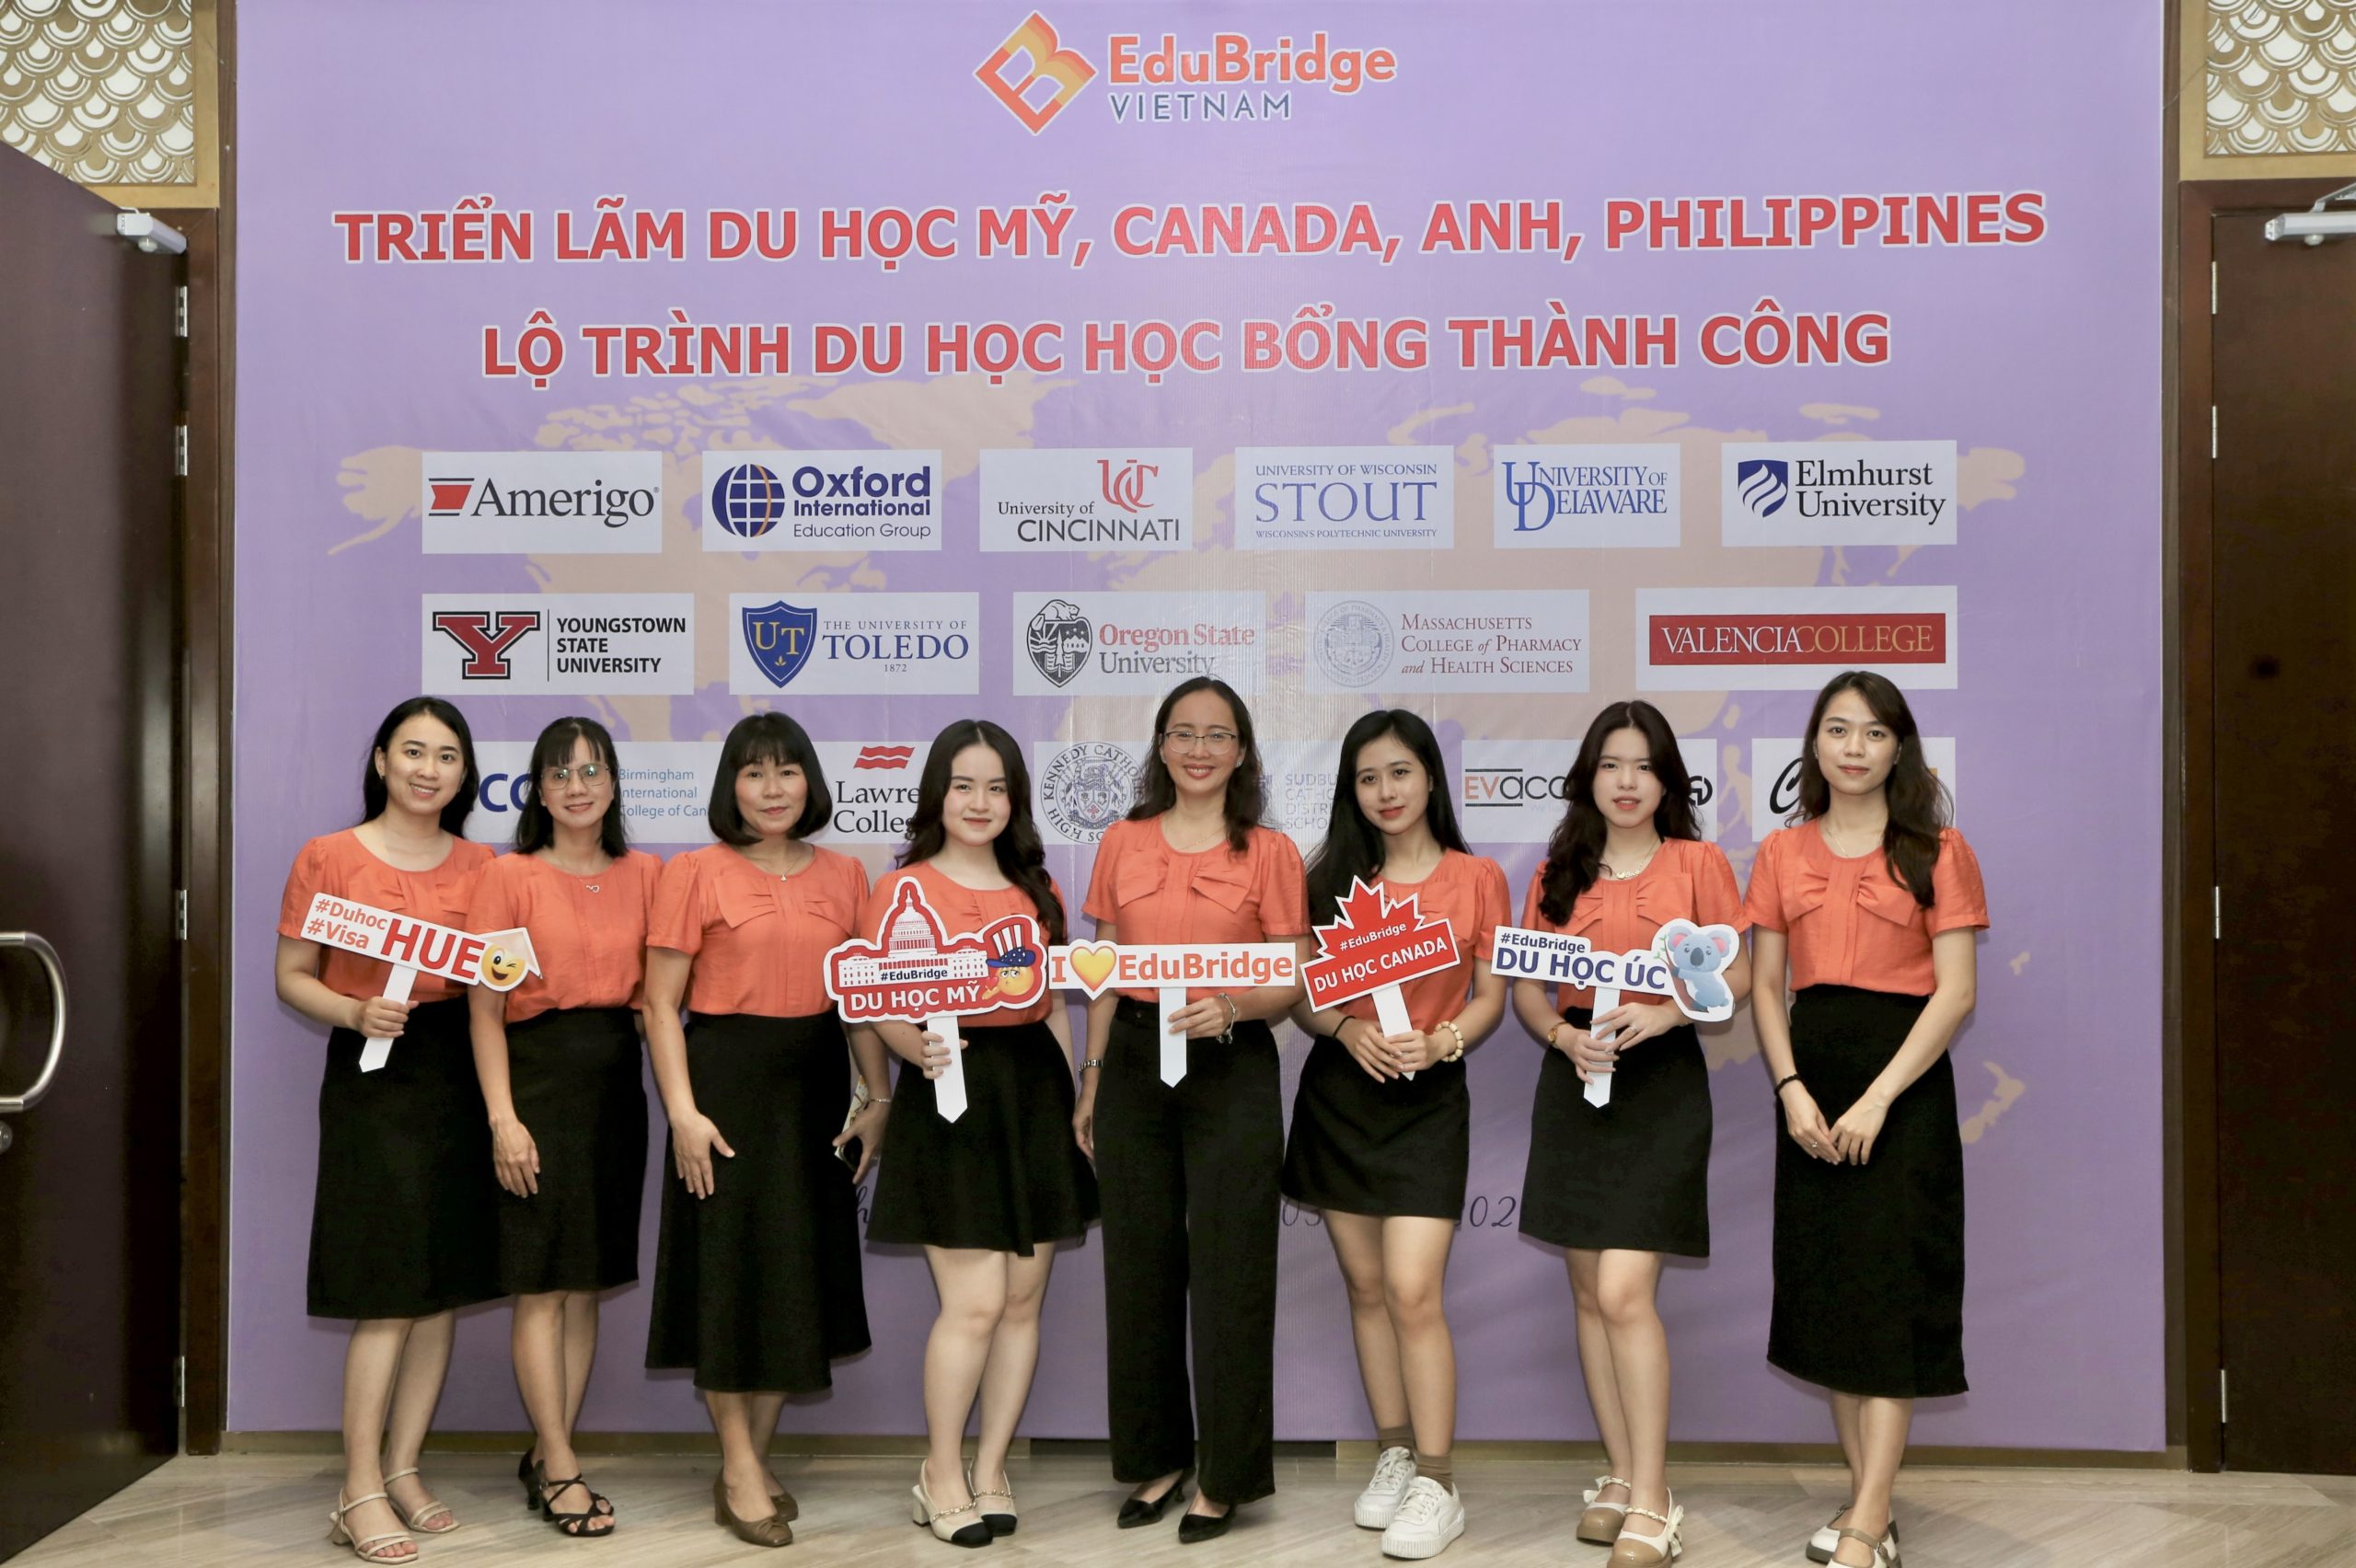 Sudbury Catholic Featured at Education Fair in Vietnam!